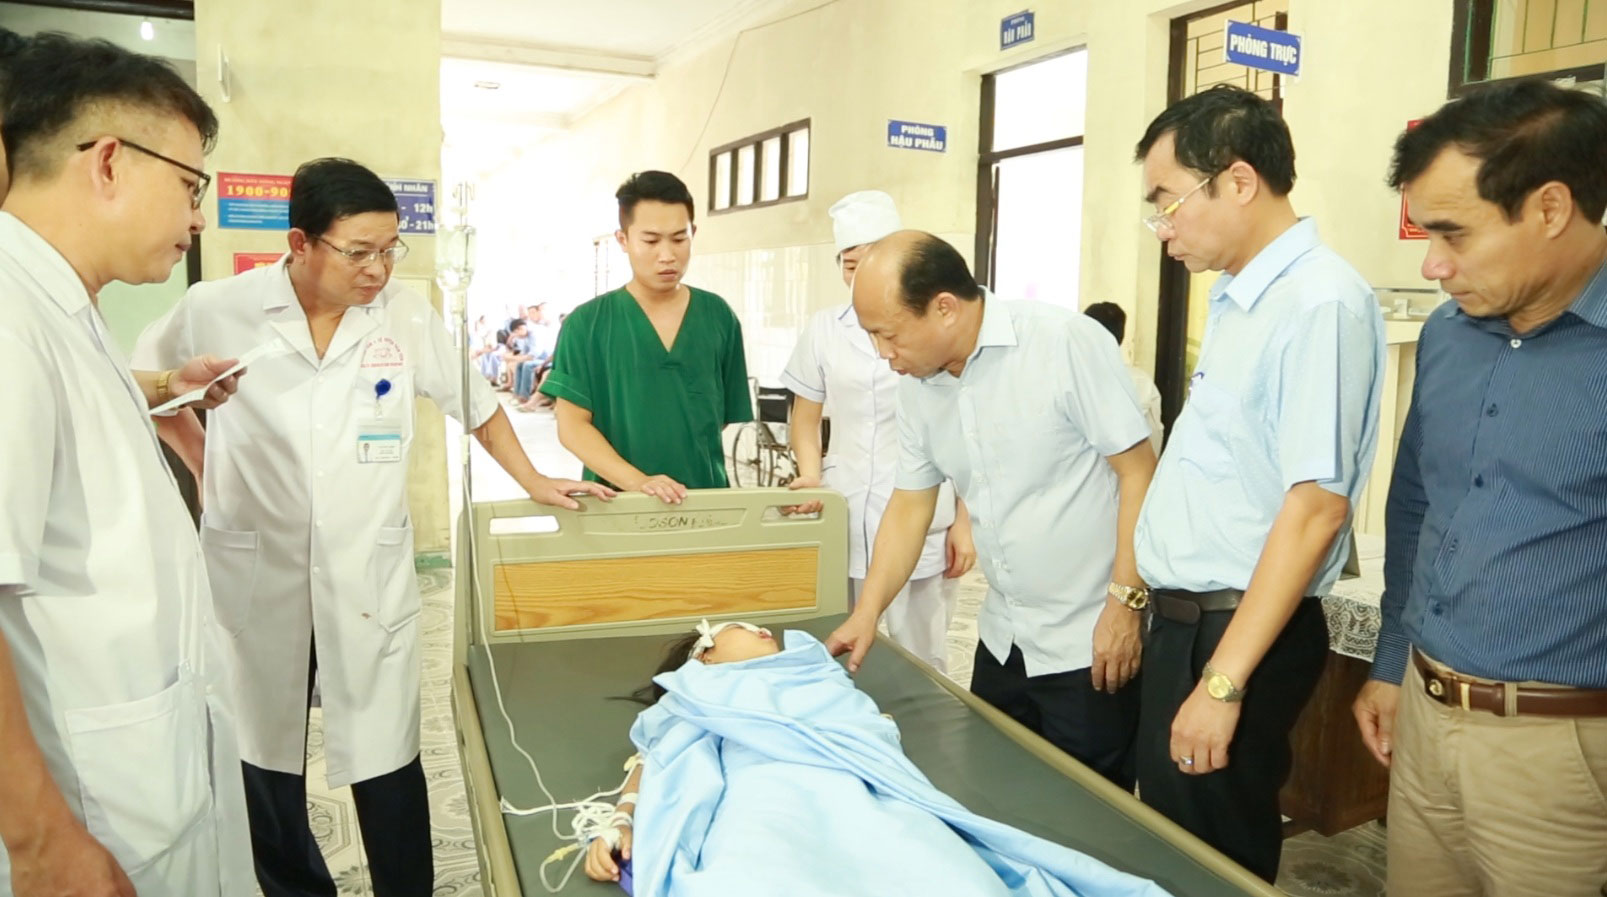 Đồng chí Vũ Xuân Diện, Giám đốc Sở Y tế, trực tiếp thăm hỏi, chỉ đạo công tác cấp cứu nạn nhân tại Trung tâm Y tế huyện Tiên Yên. Ảnh 1,5: 